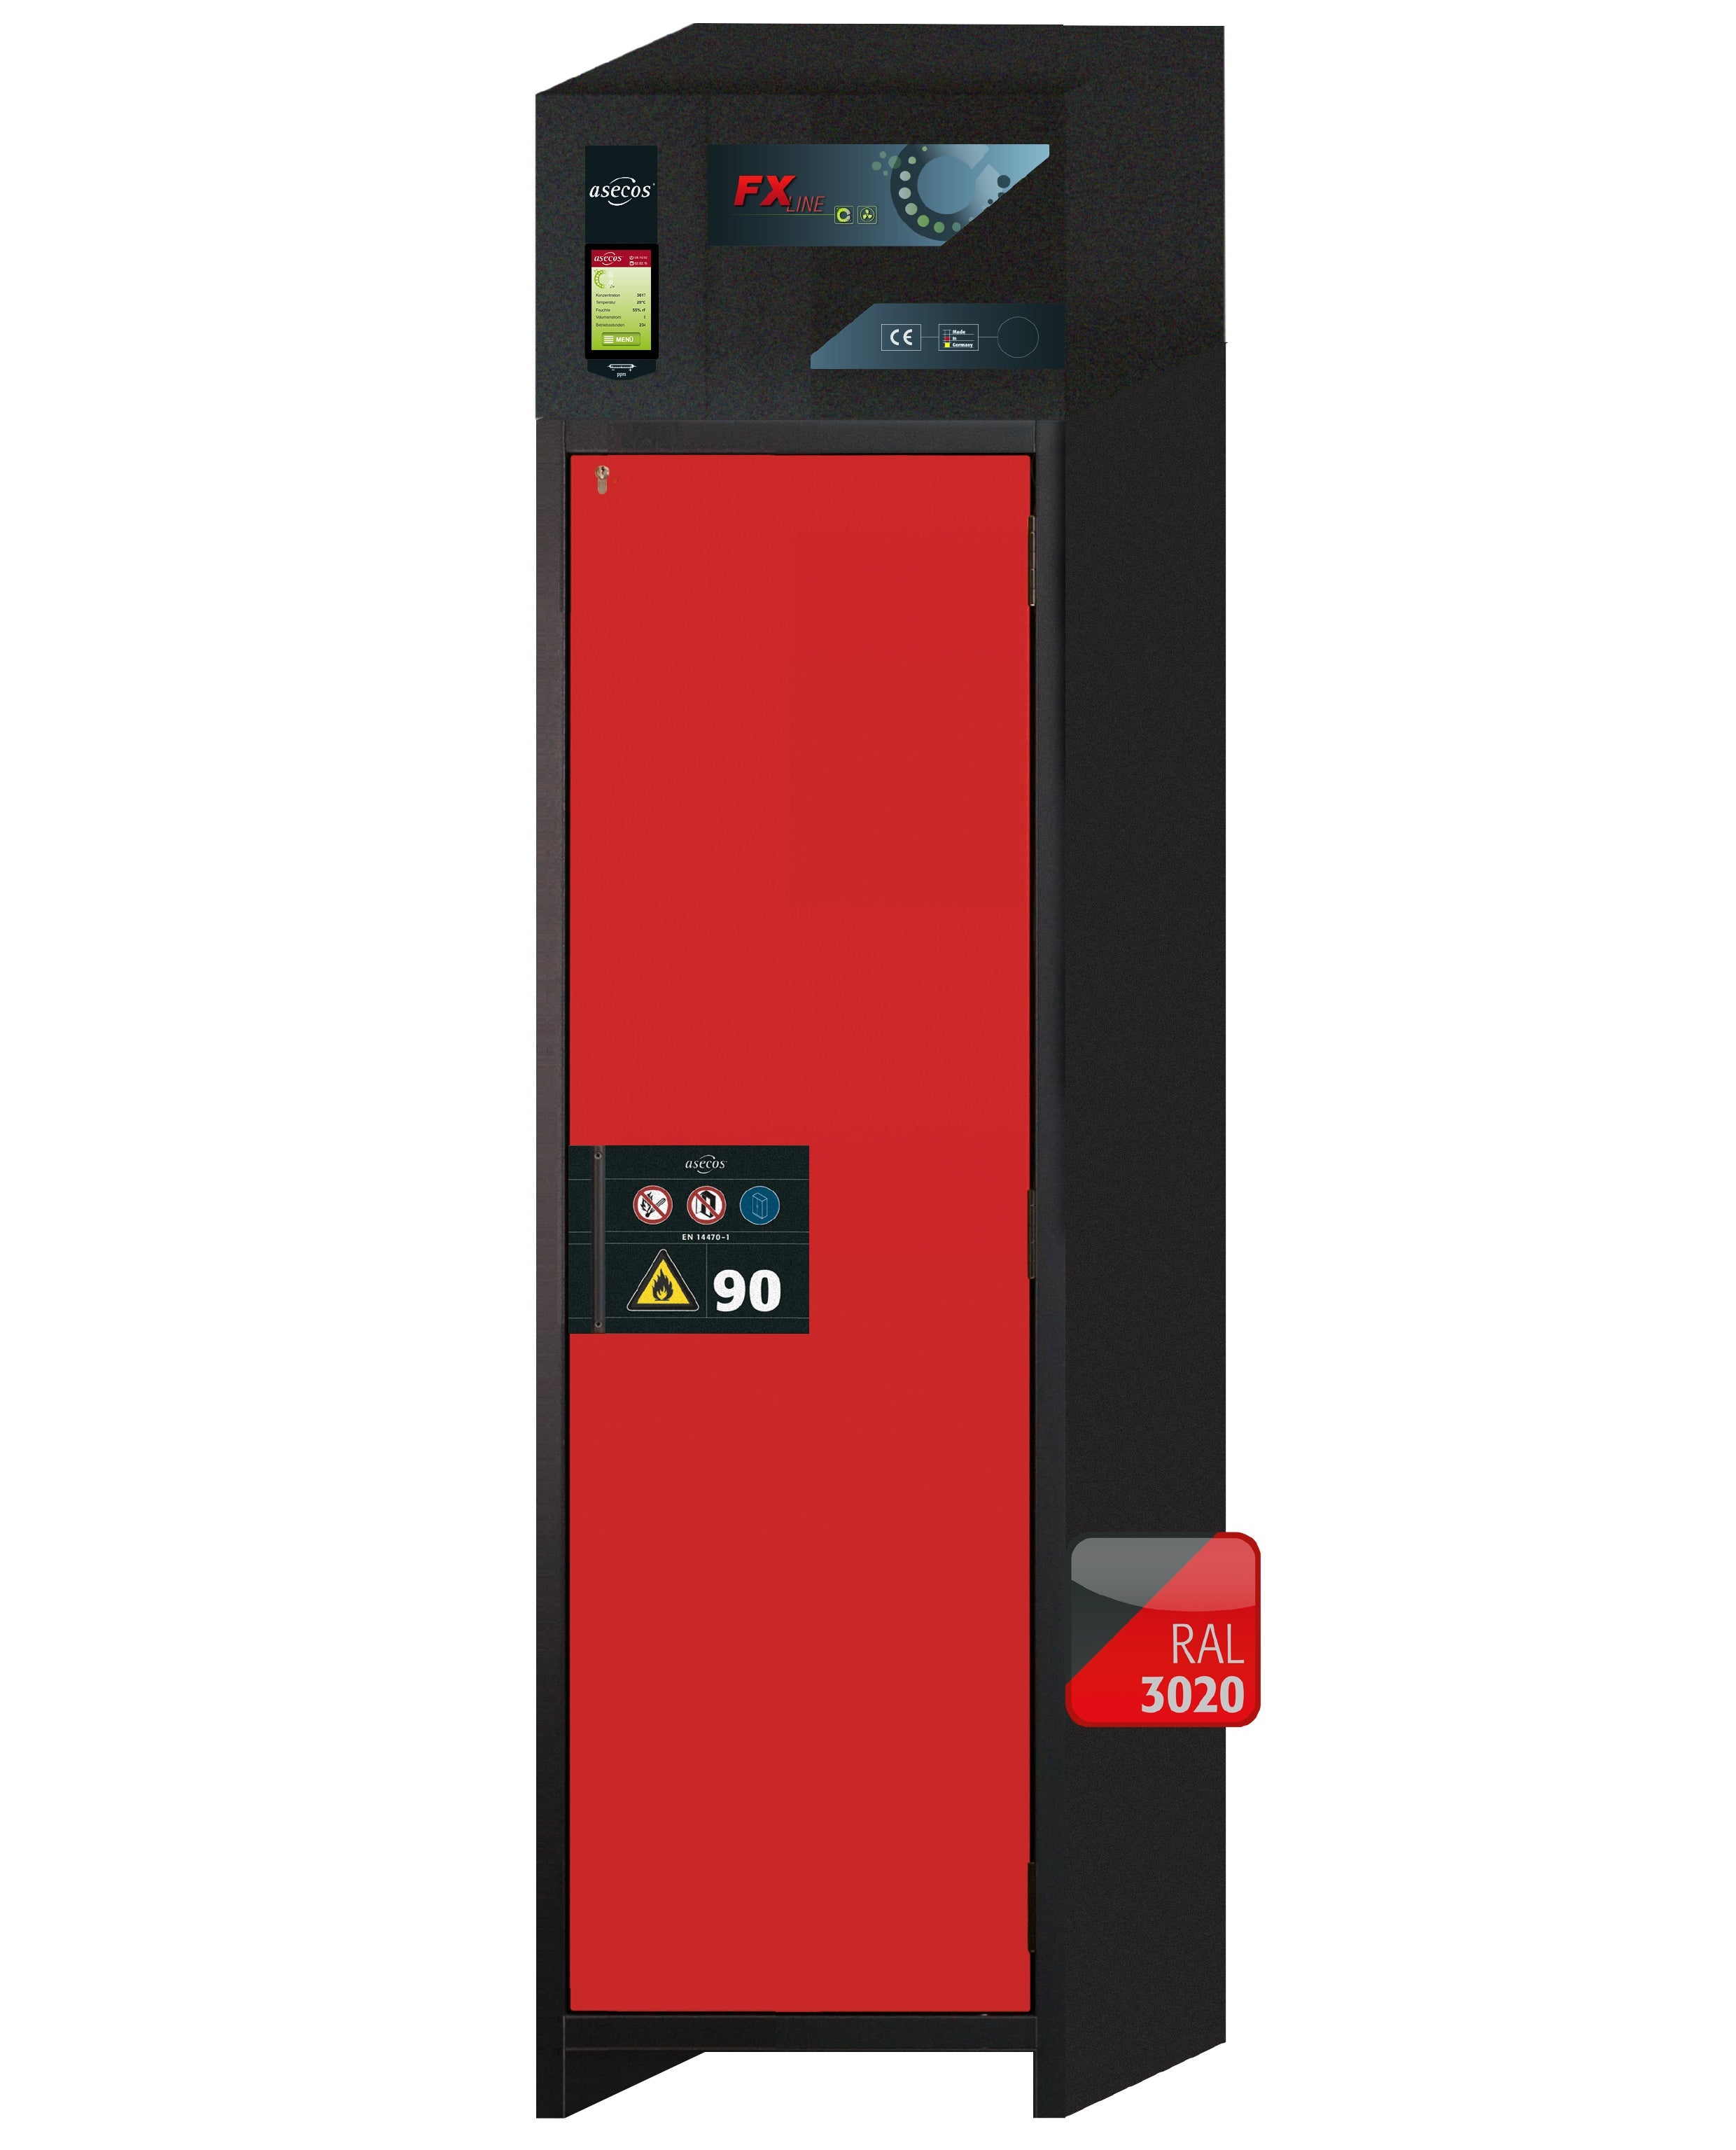 Armoire de filtration d'air de type 90 FX-PEGASUS-90 modèle FX90.229.060.WDACR en rouge signalisation RAL 3020 avec 3 étagères standard (acier inoxydable 1.4301)